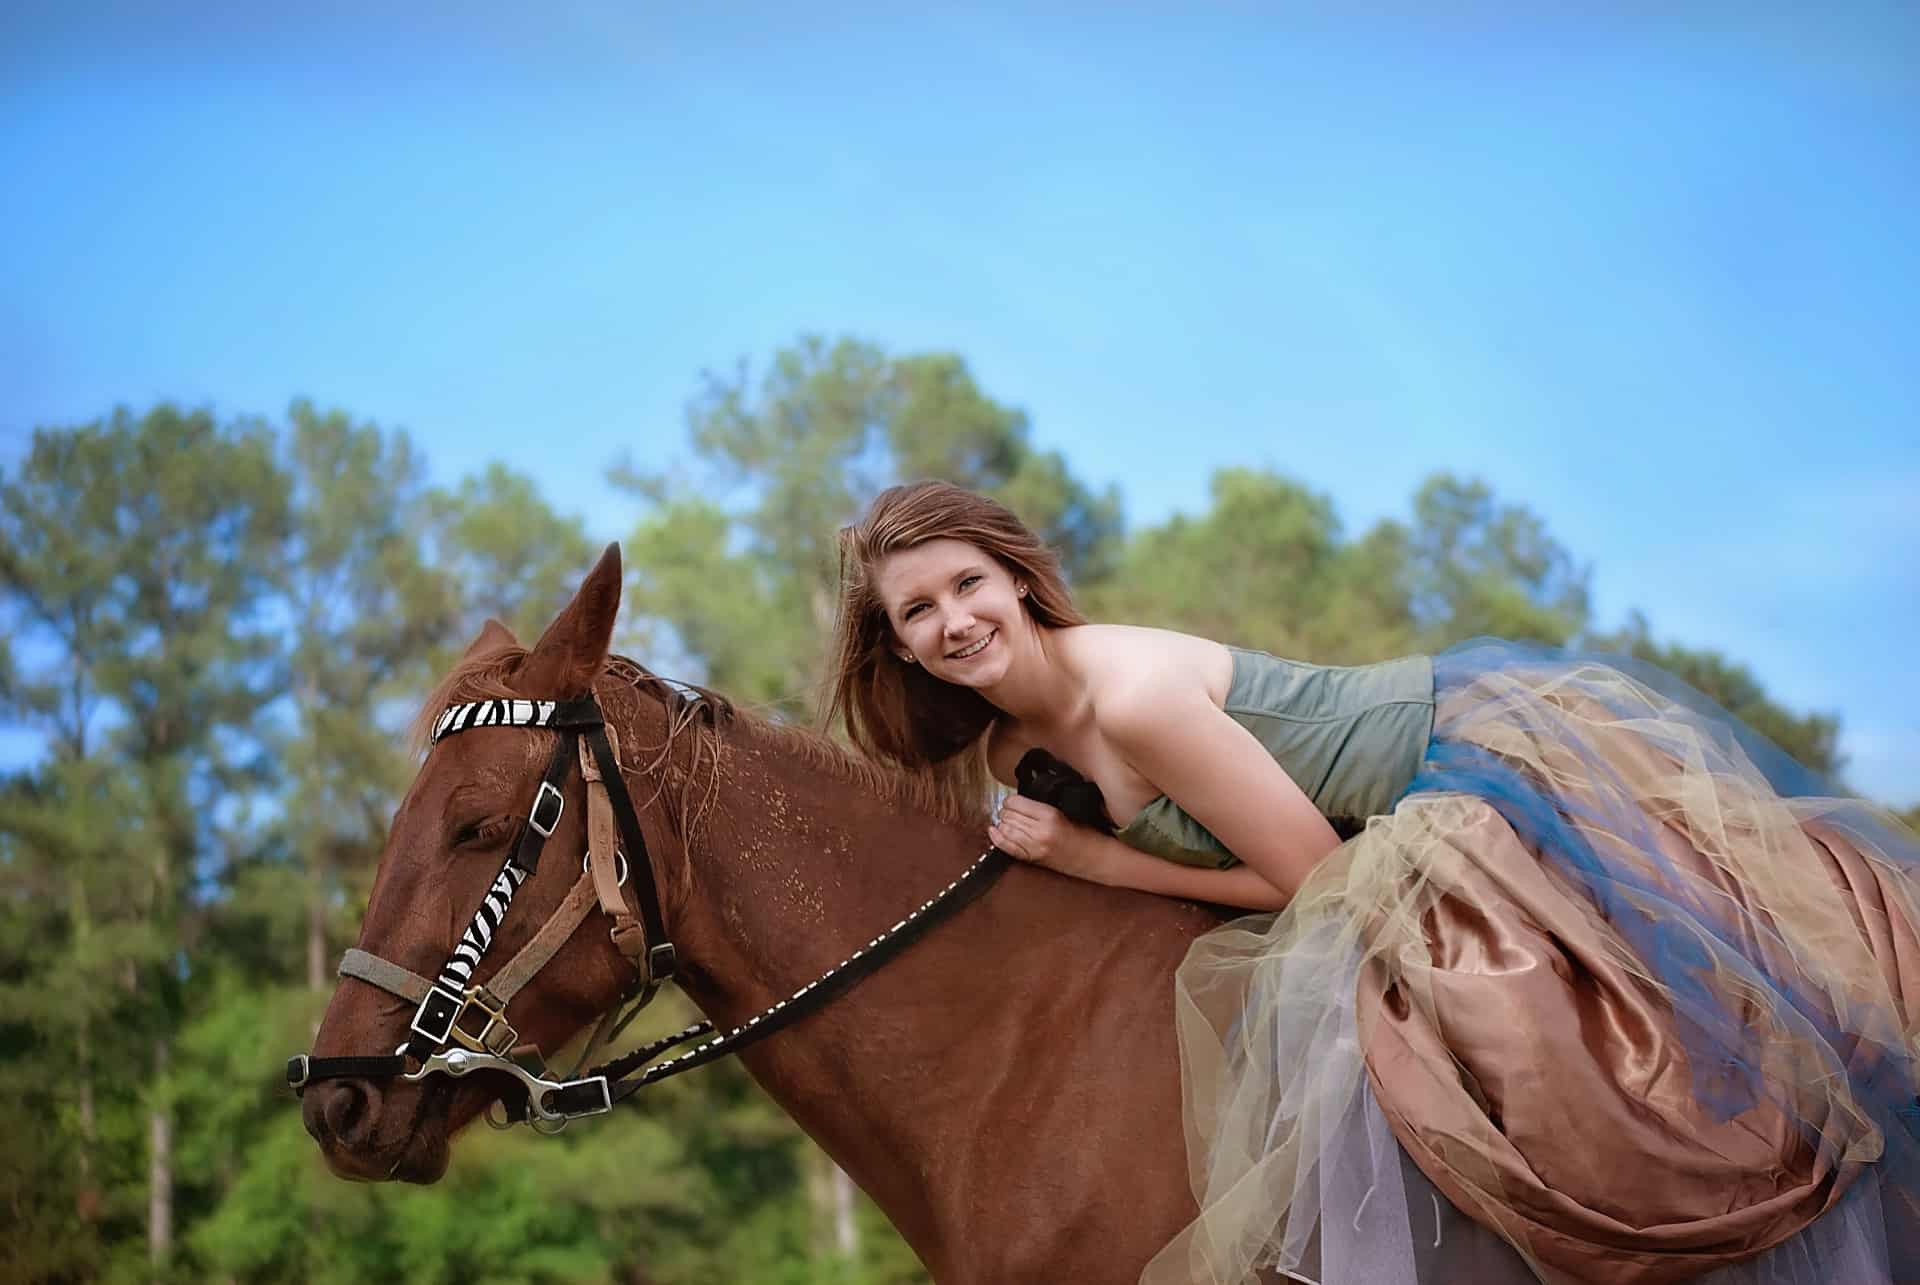 Why do women love horseback riding?